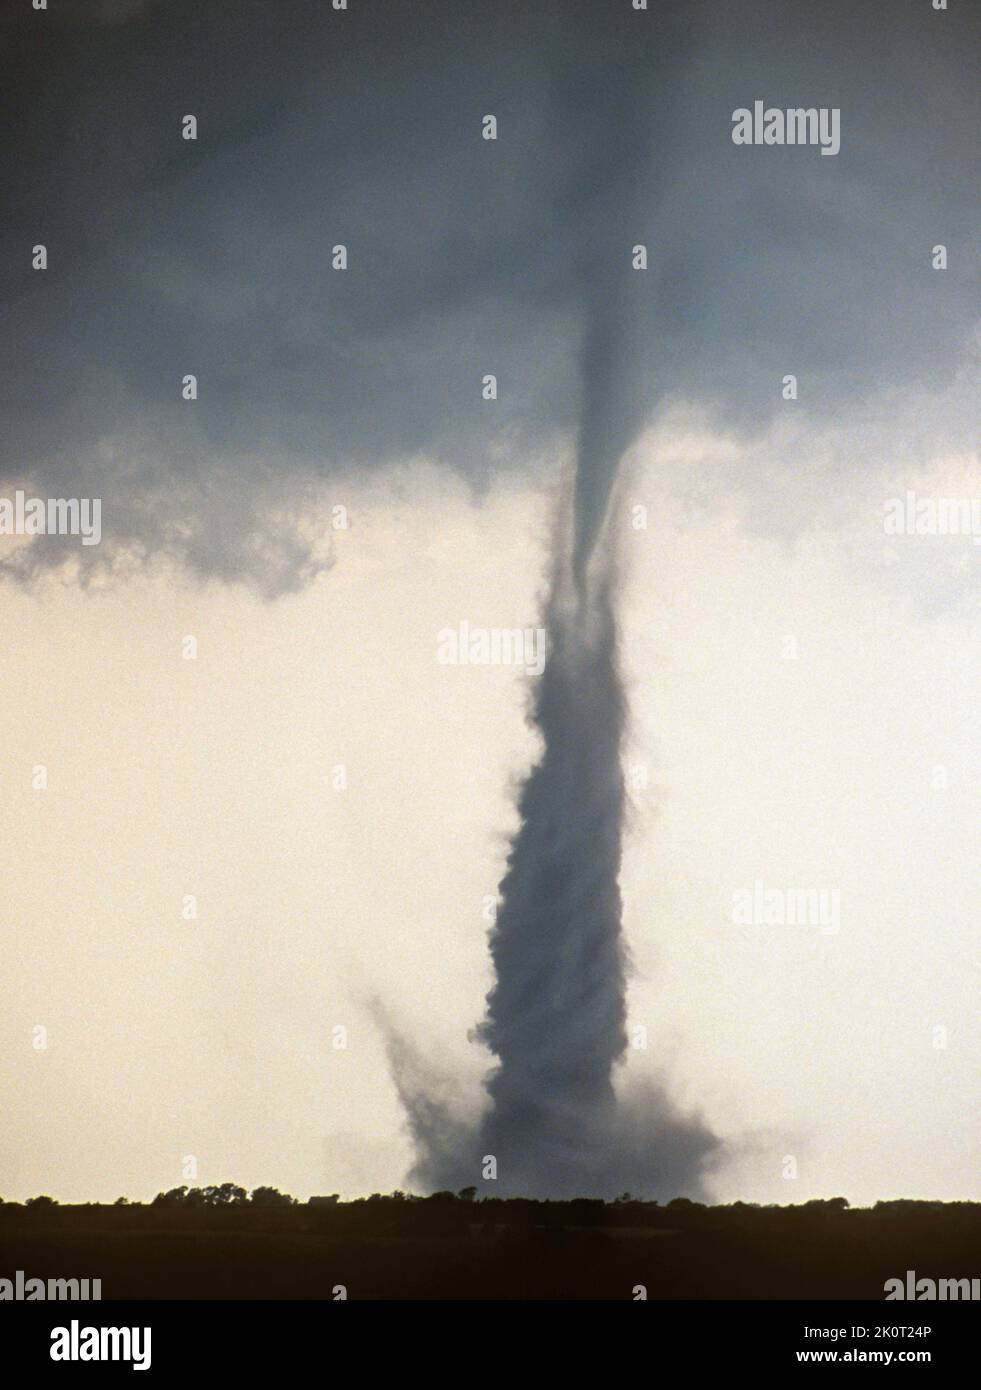 A tornado spins over farmland in Nebraska, USA Stock Photo